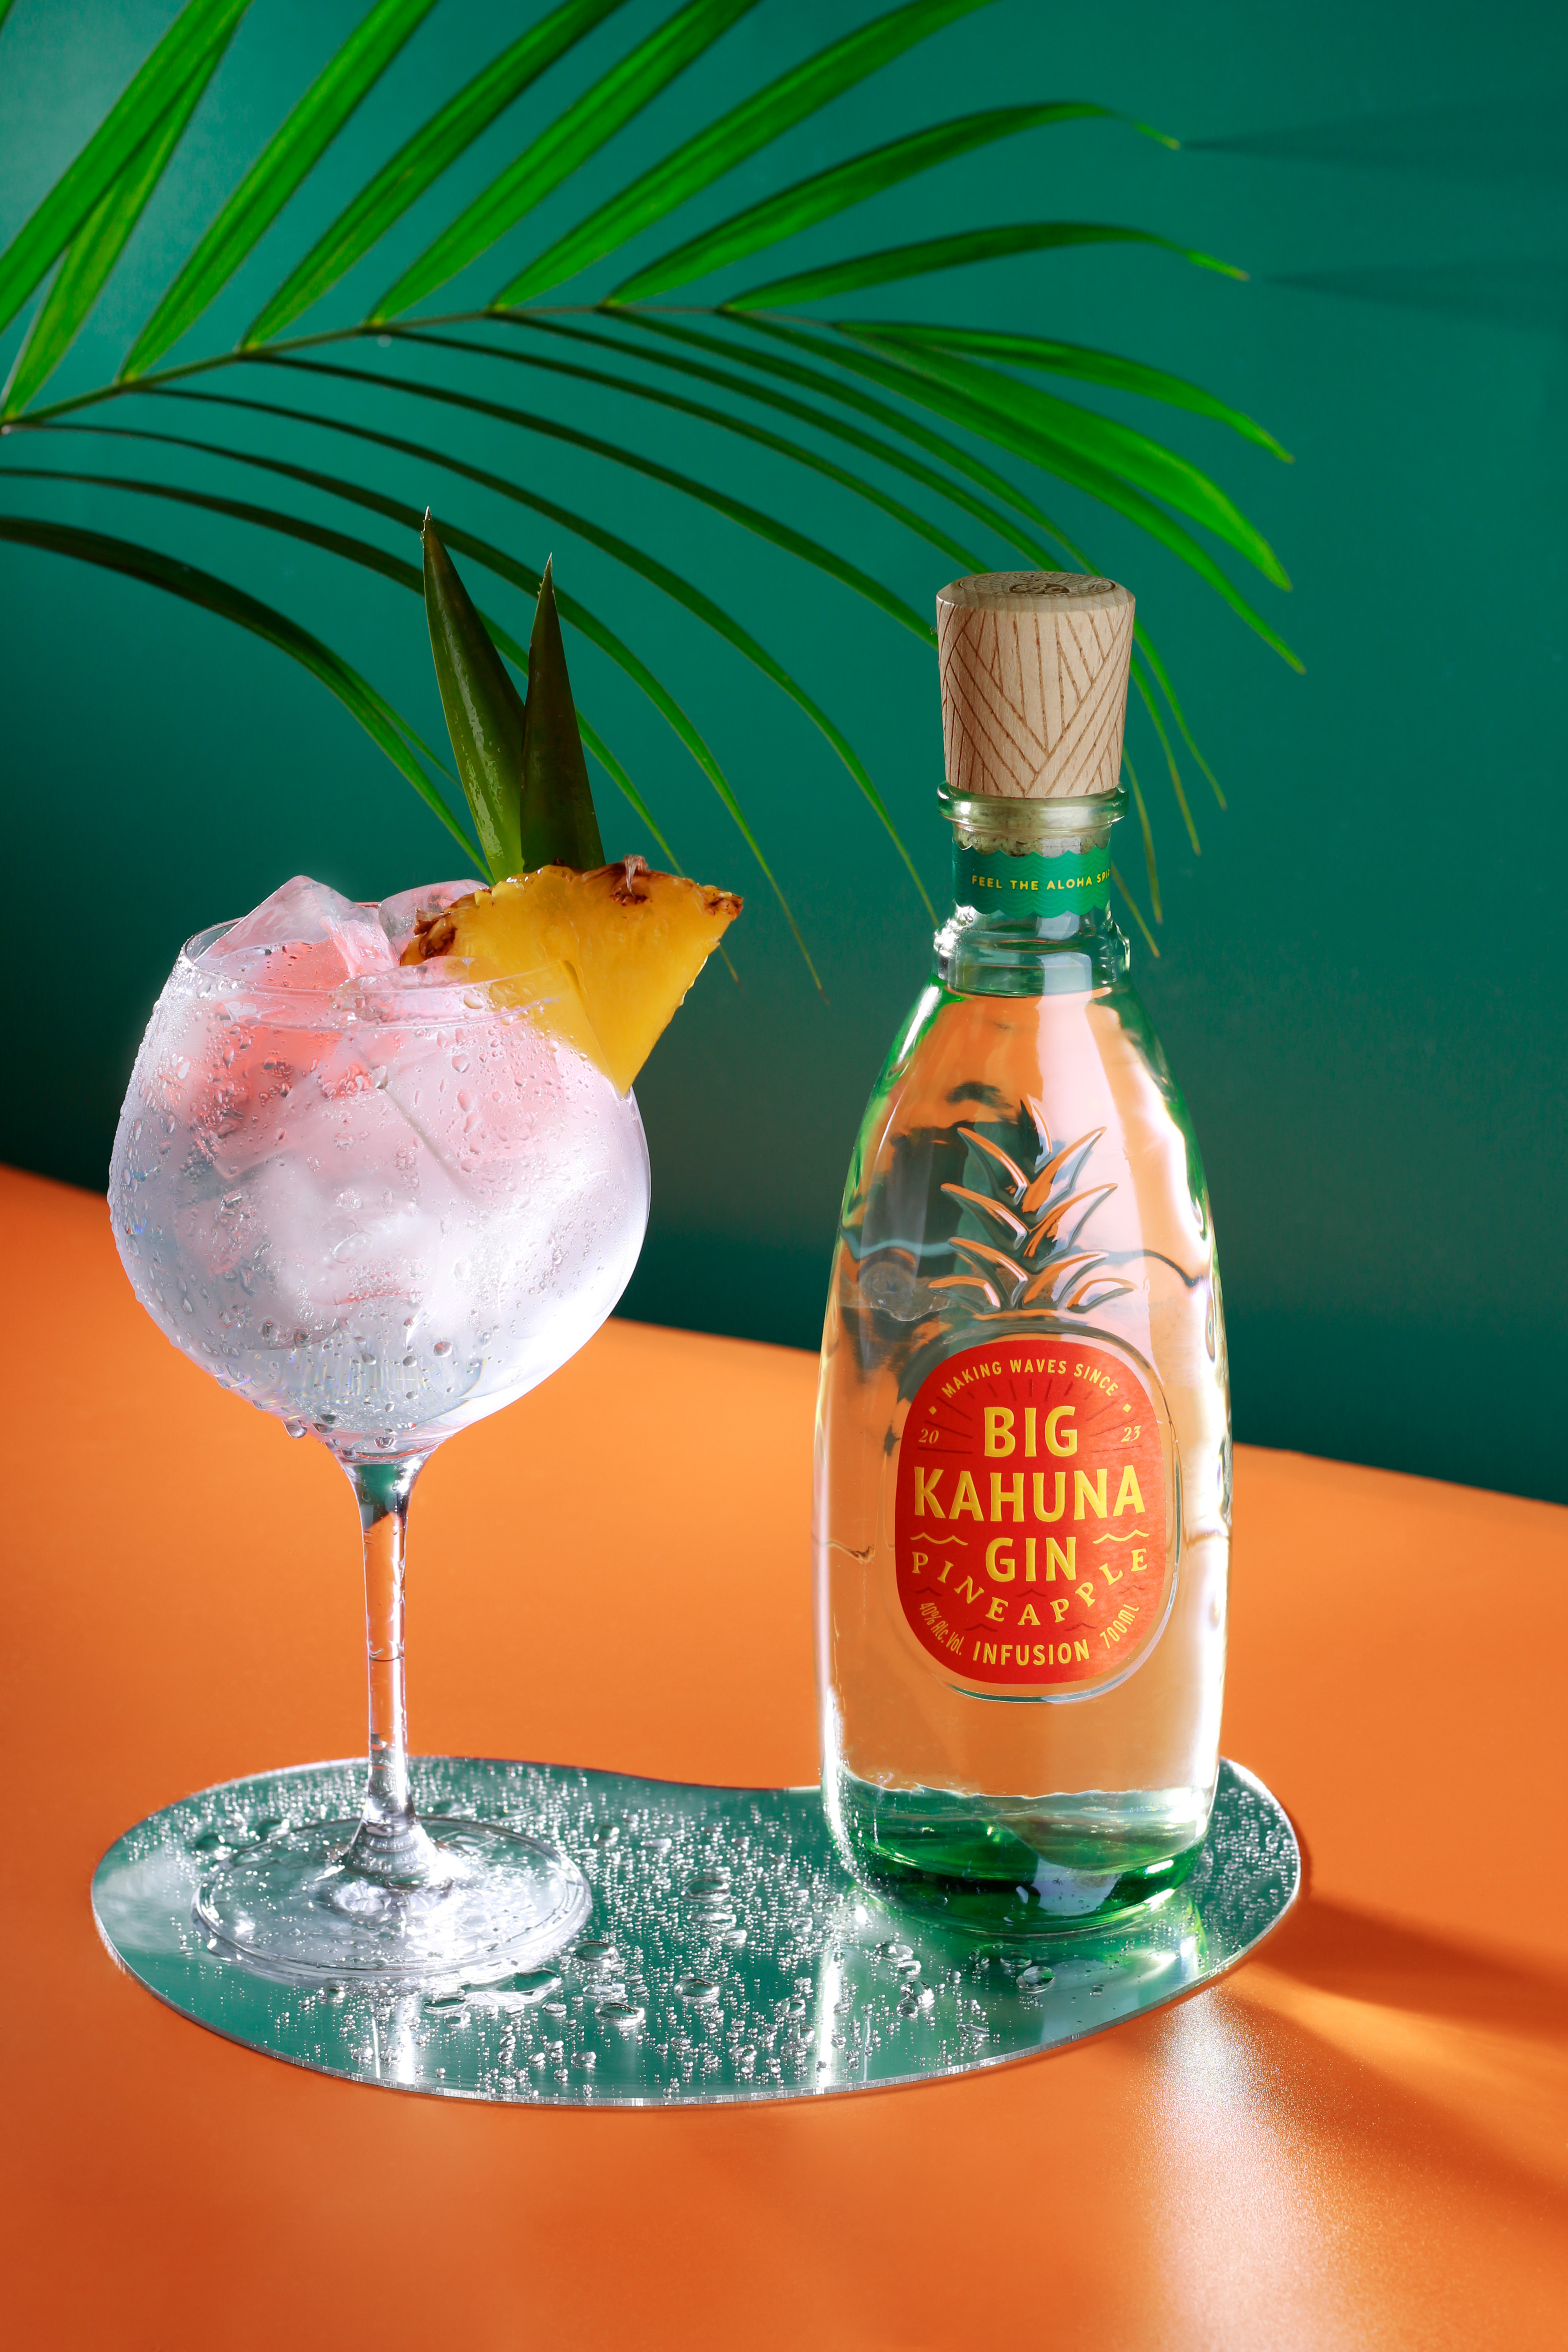 Big Kahuna Gin Pineapple - Ochutený gin